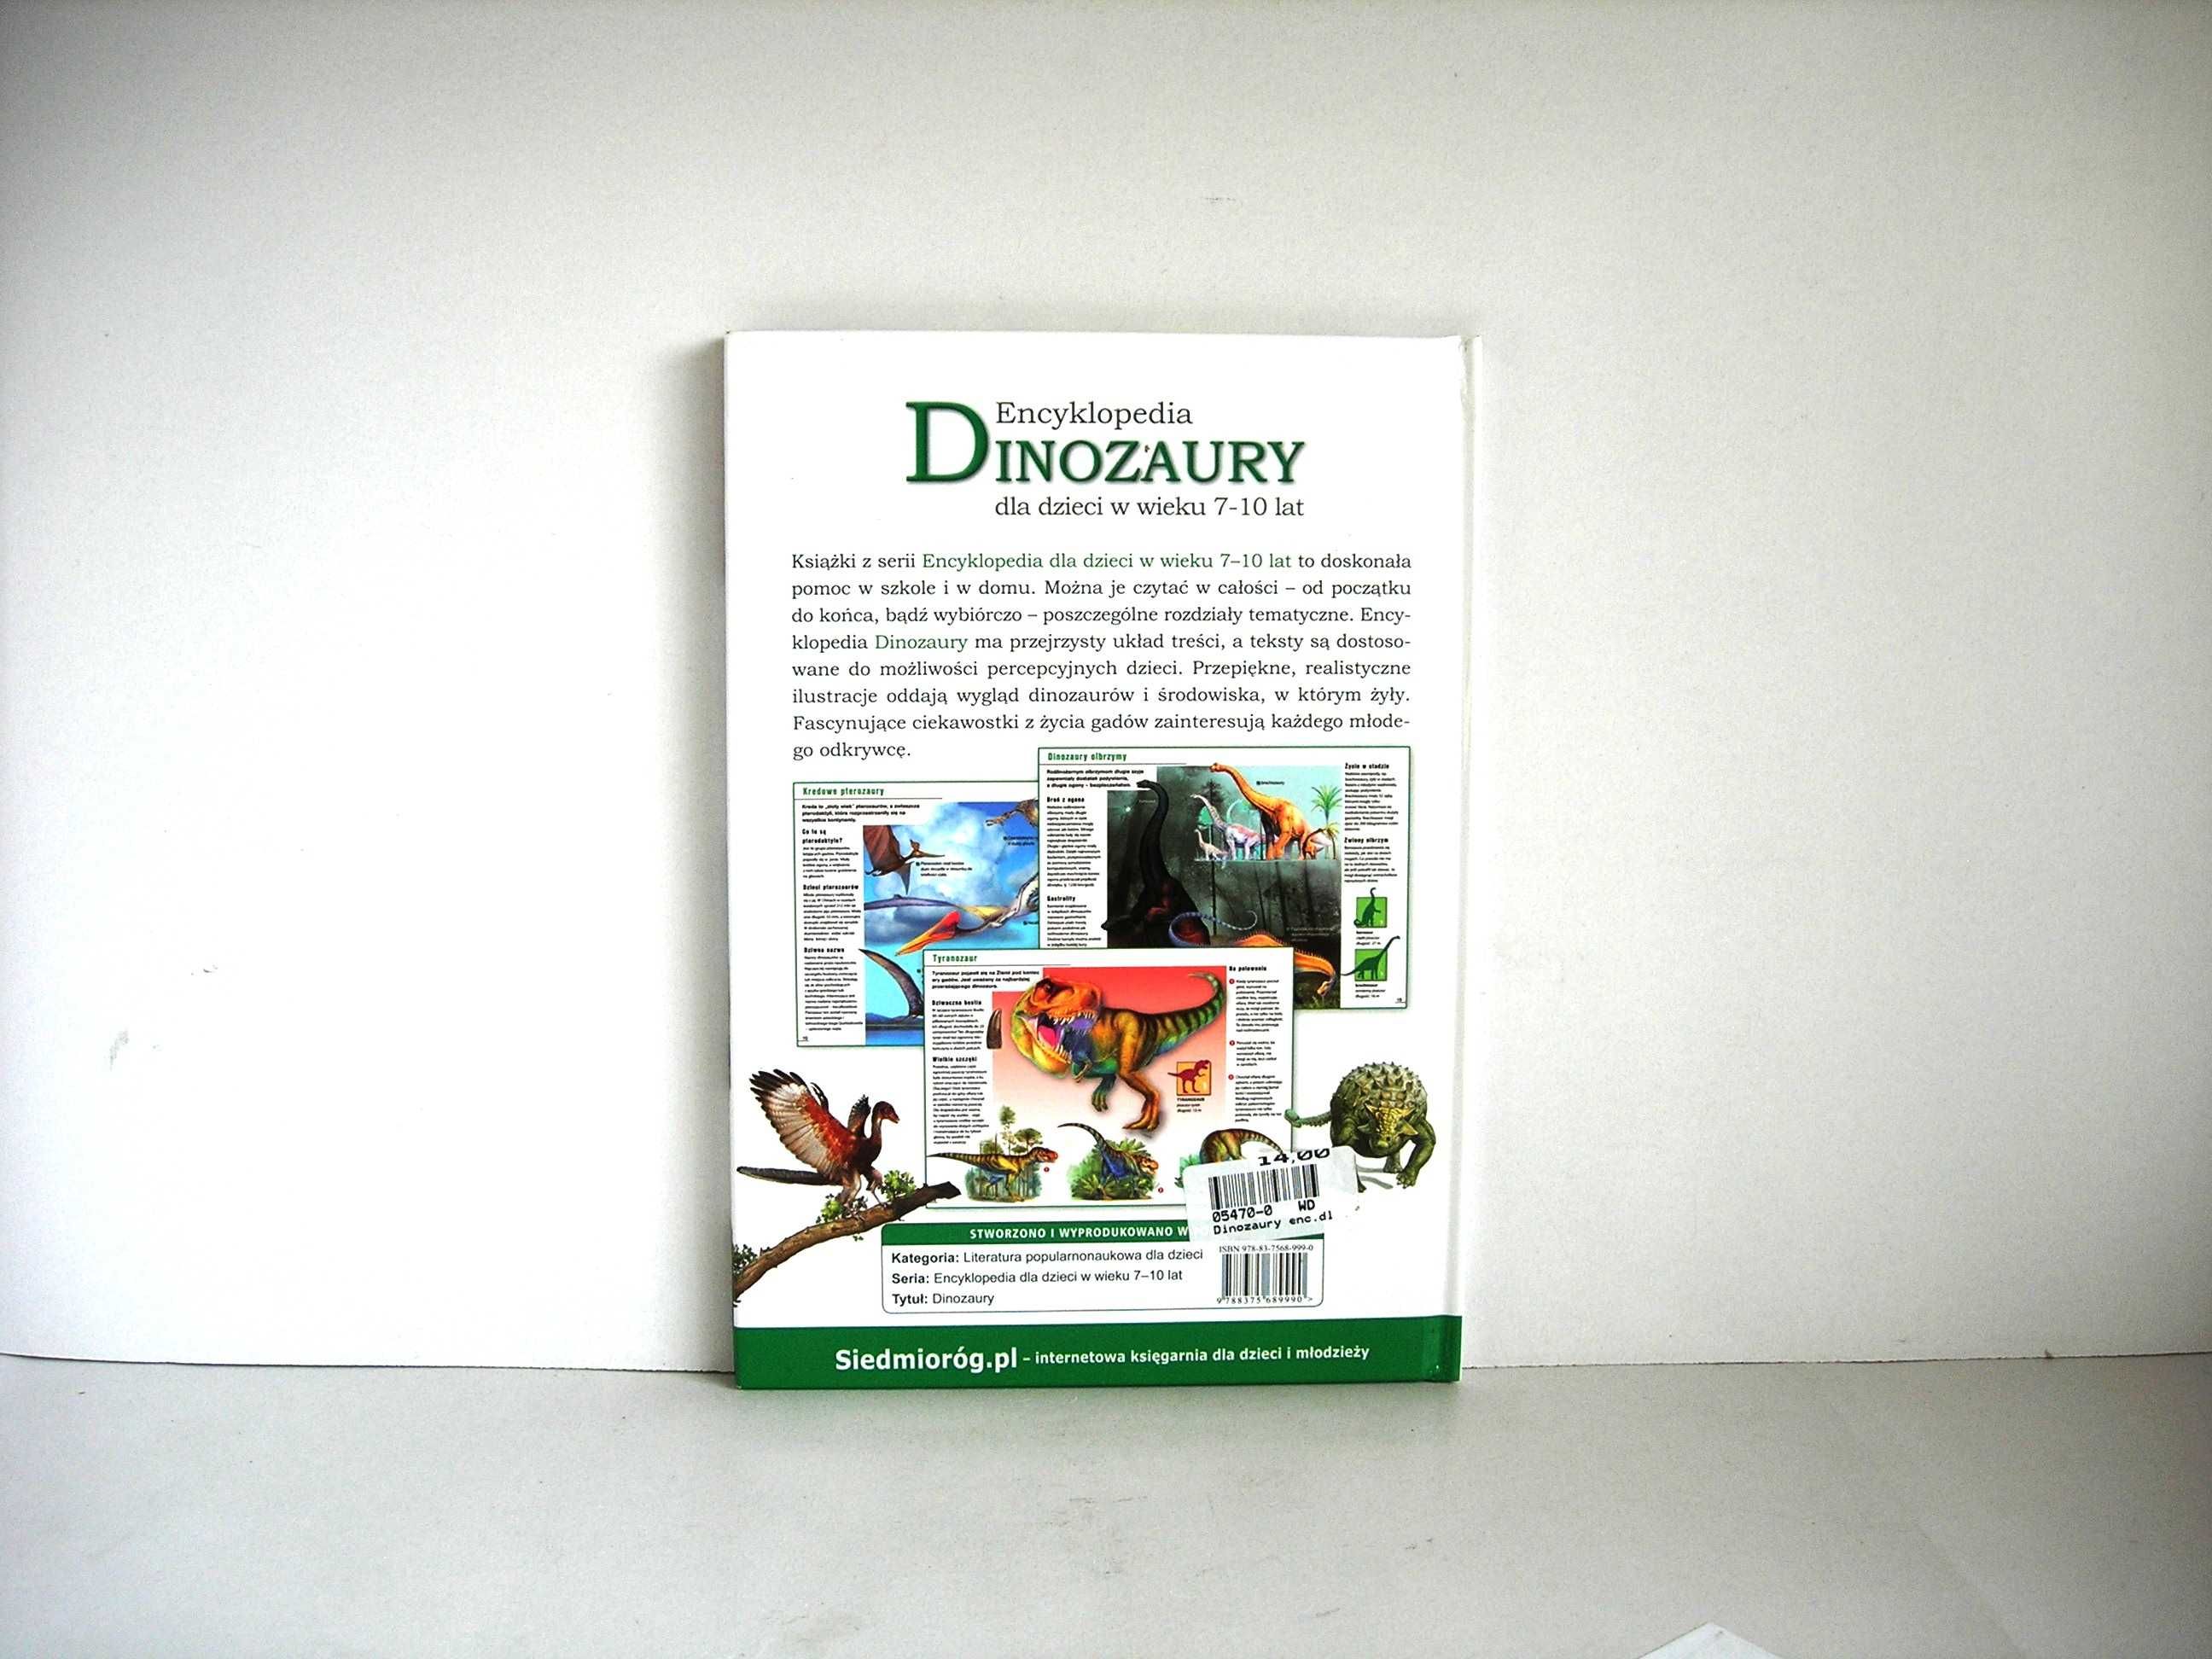 "Dionozaury" encyklopedia dla dzieci wyd. Siedmioróg 2012